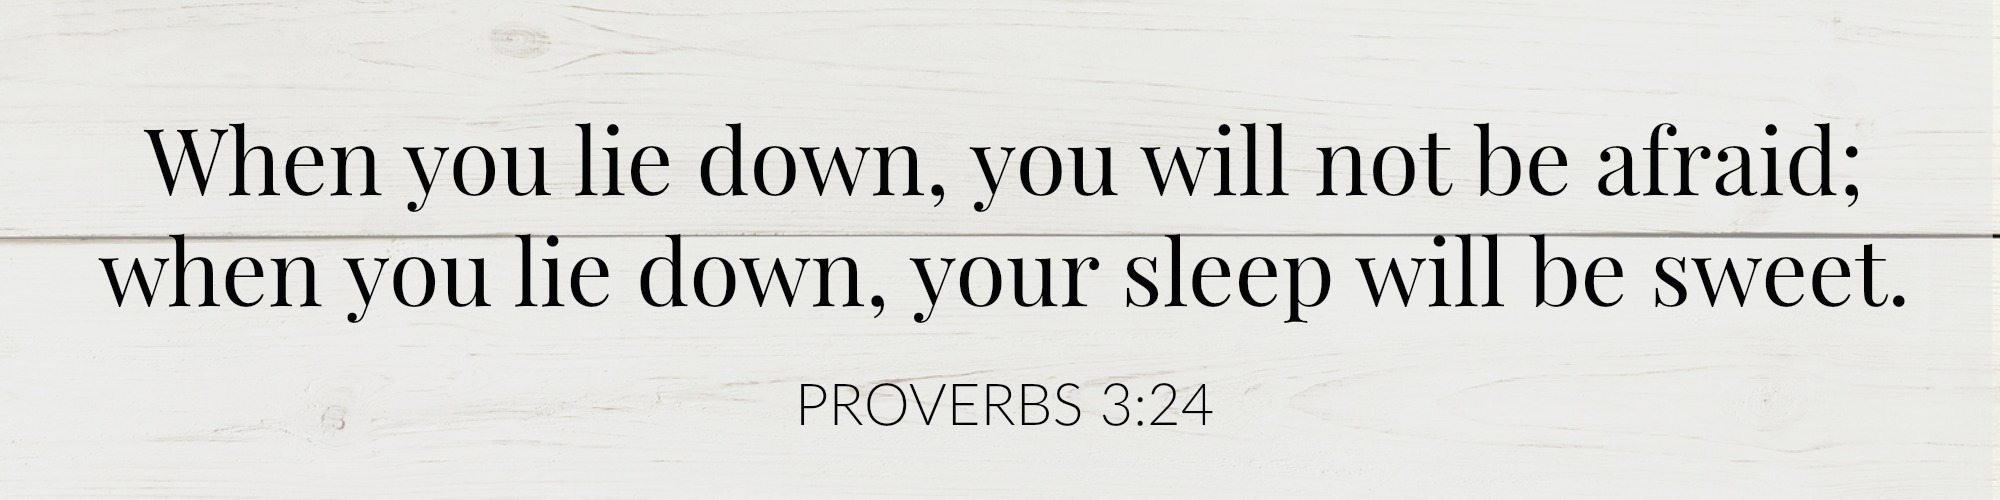 proverbs-3-24